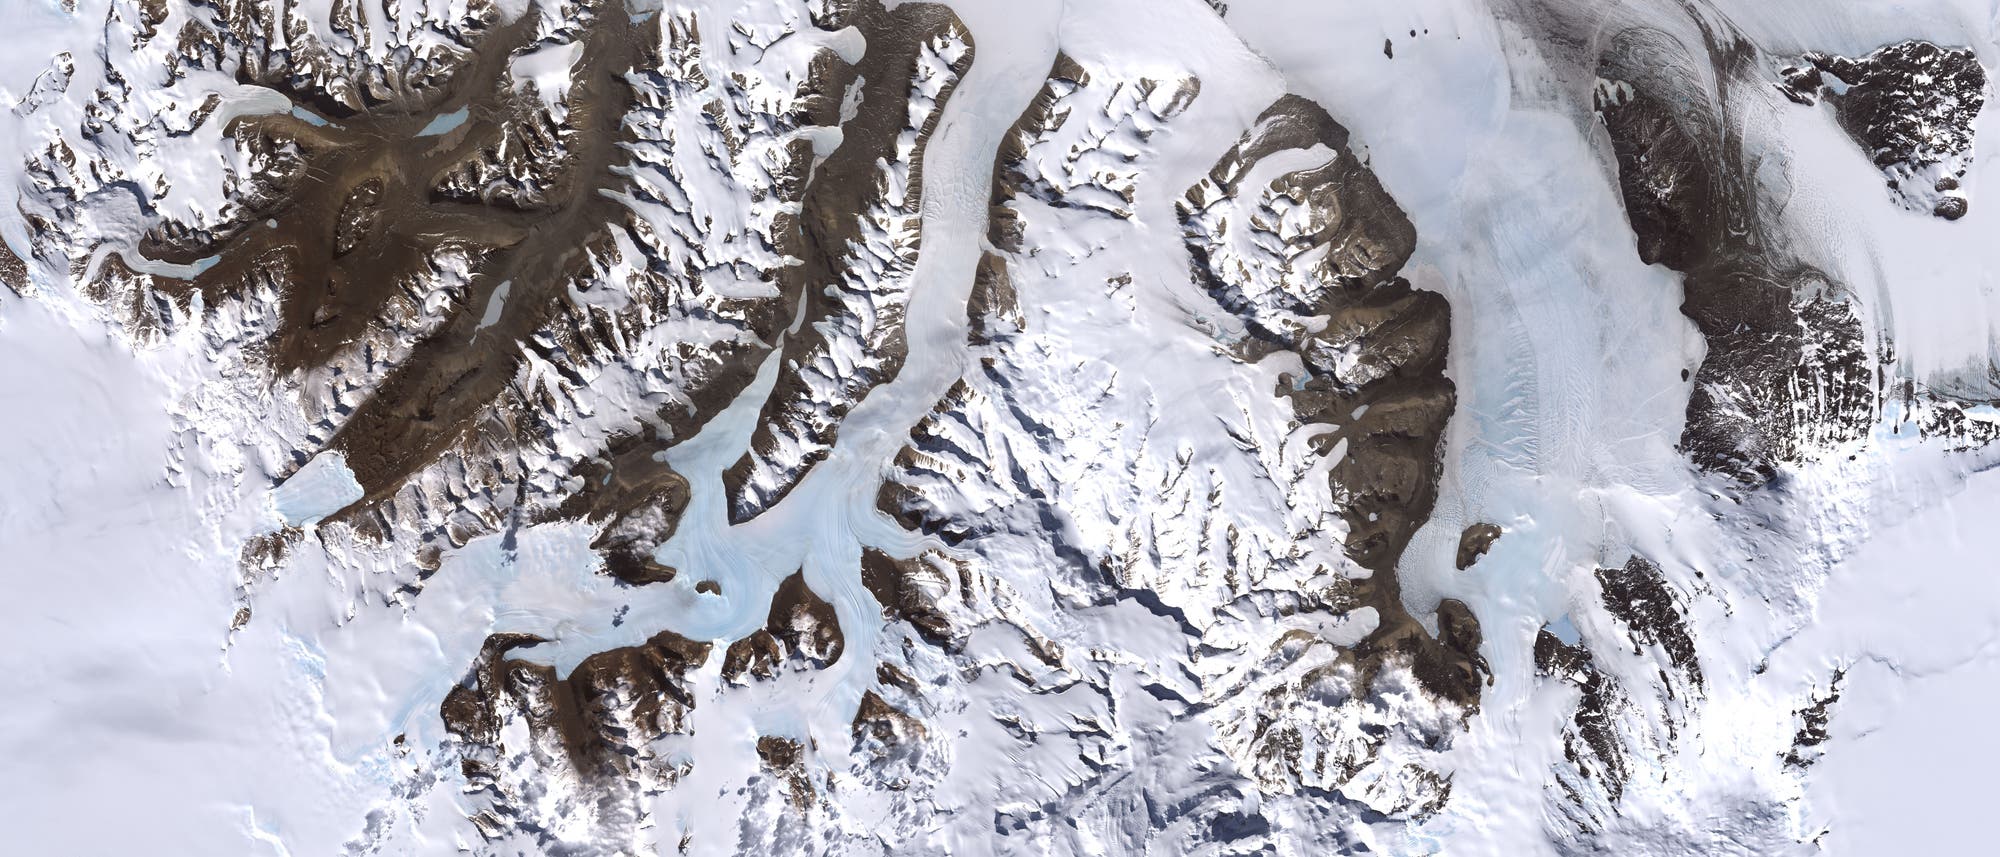 McMurdo-Trockentäler/Dry Valleys